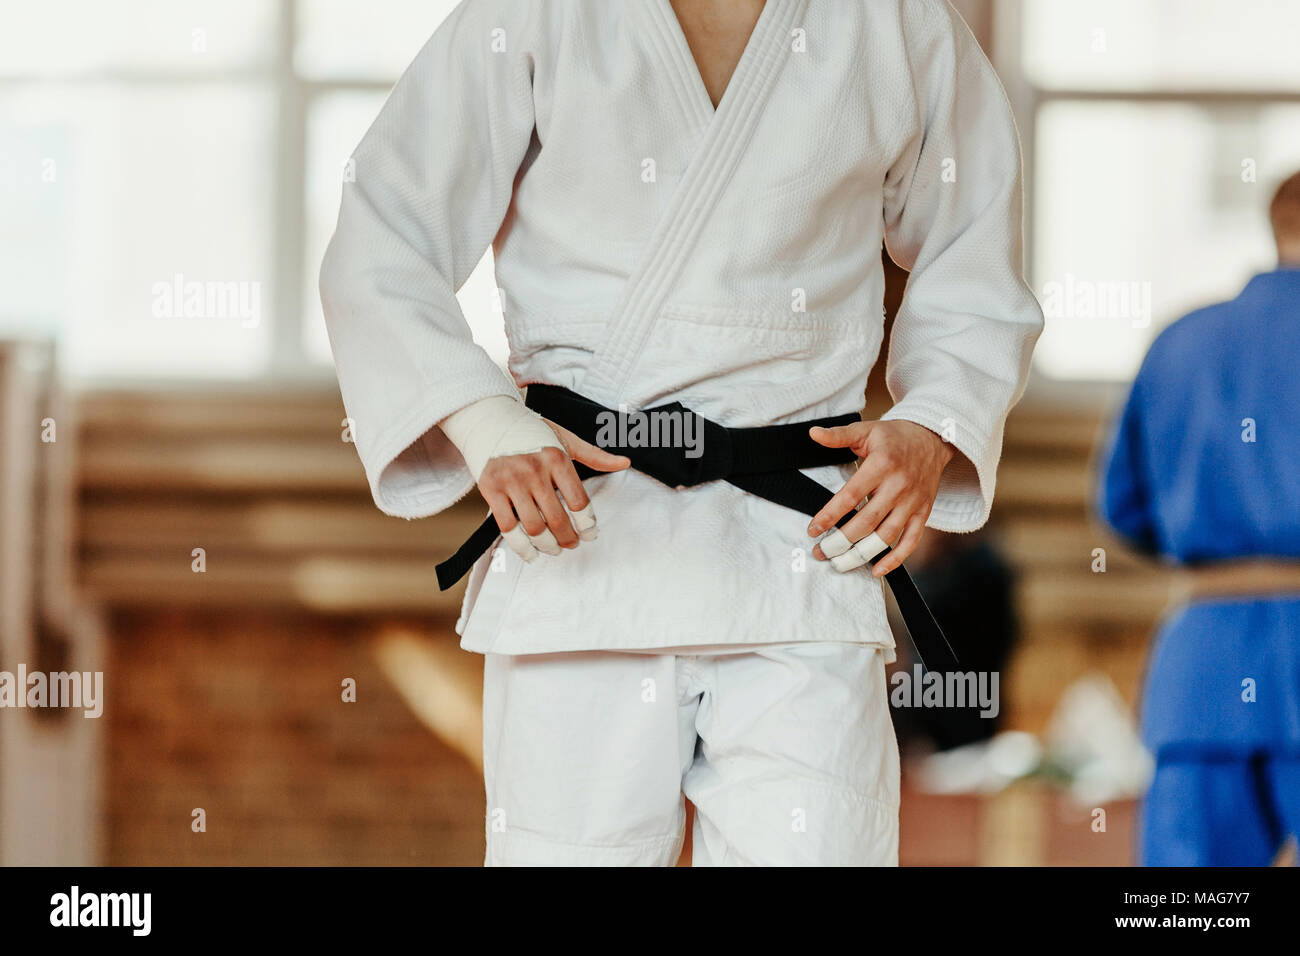 Judoka weissen Kimono mit schwarzem Gürtel Wettbewerb judo Stockfotografie  - Alamy